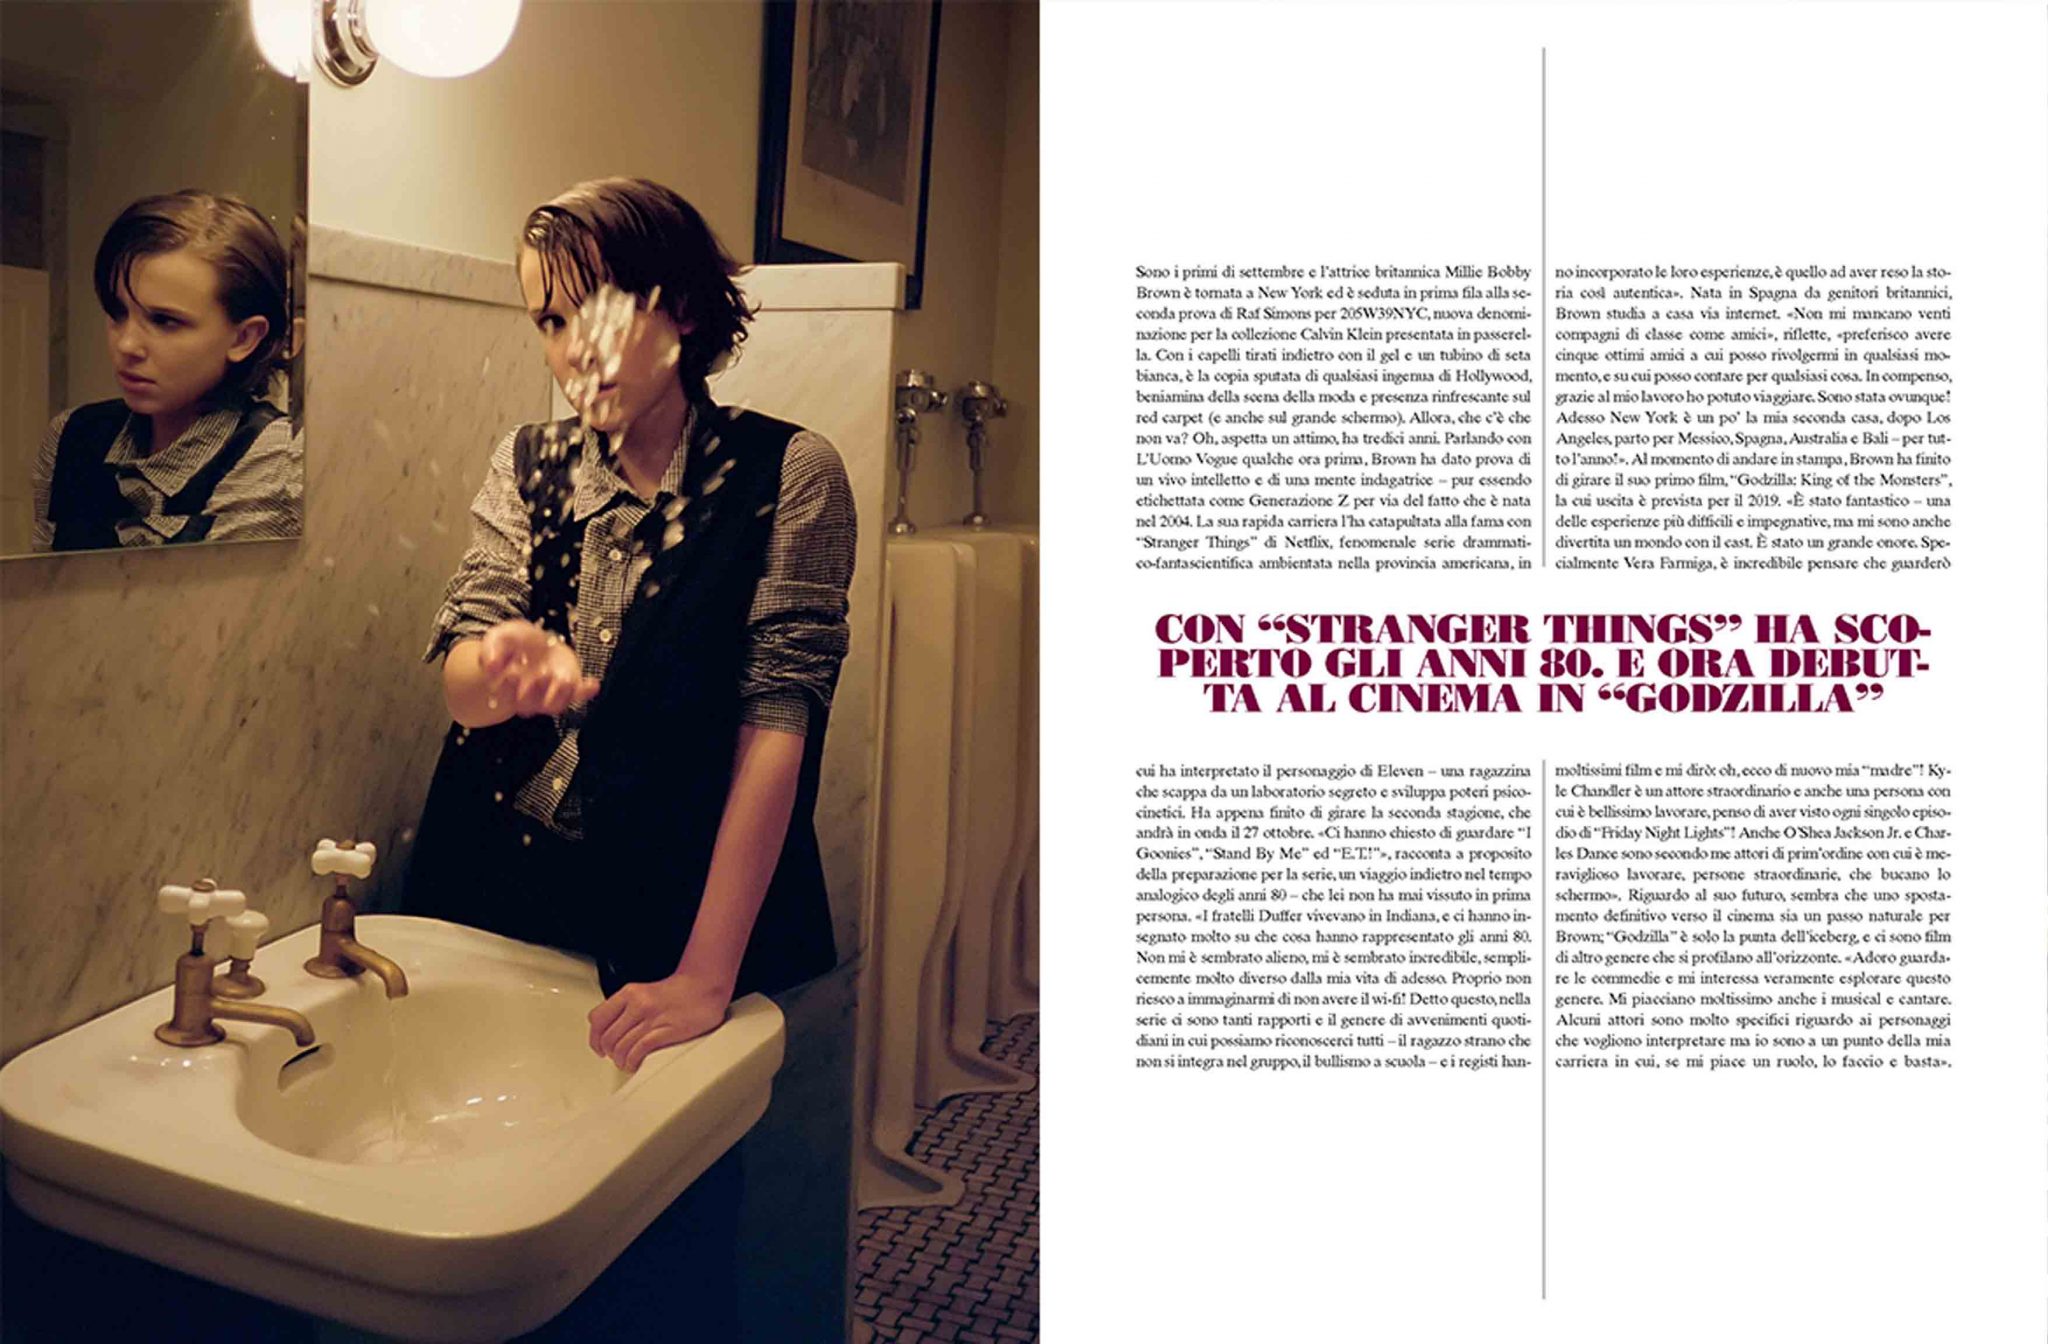 Michael Philouze | L'Uomo Vogue: Millie Brown | 4